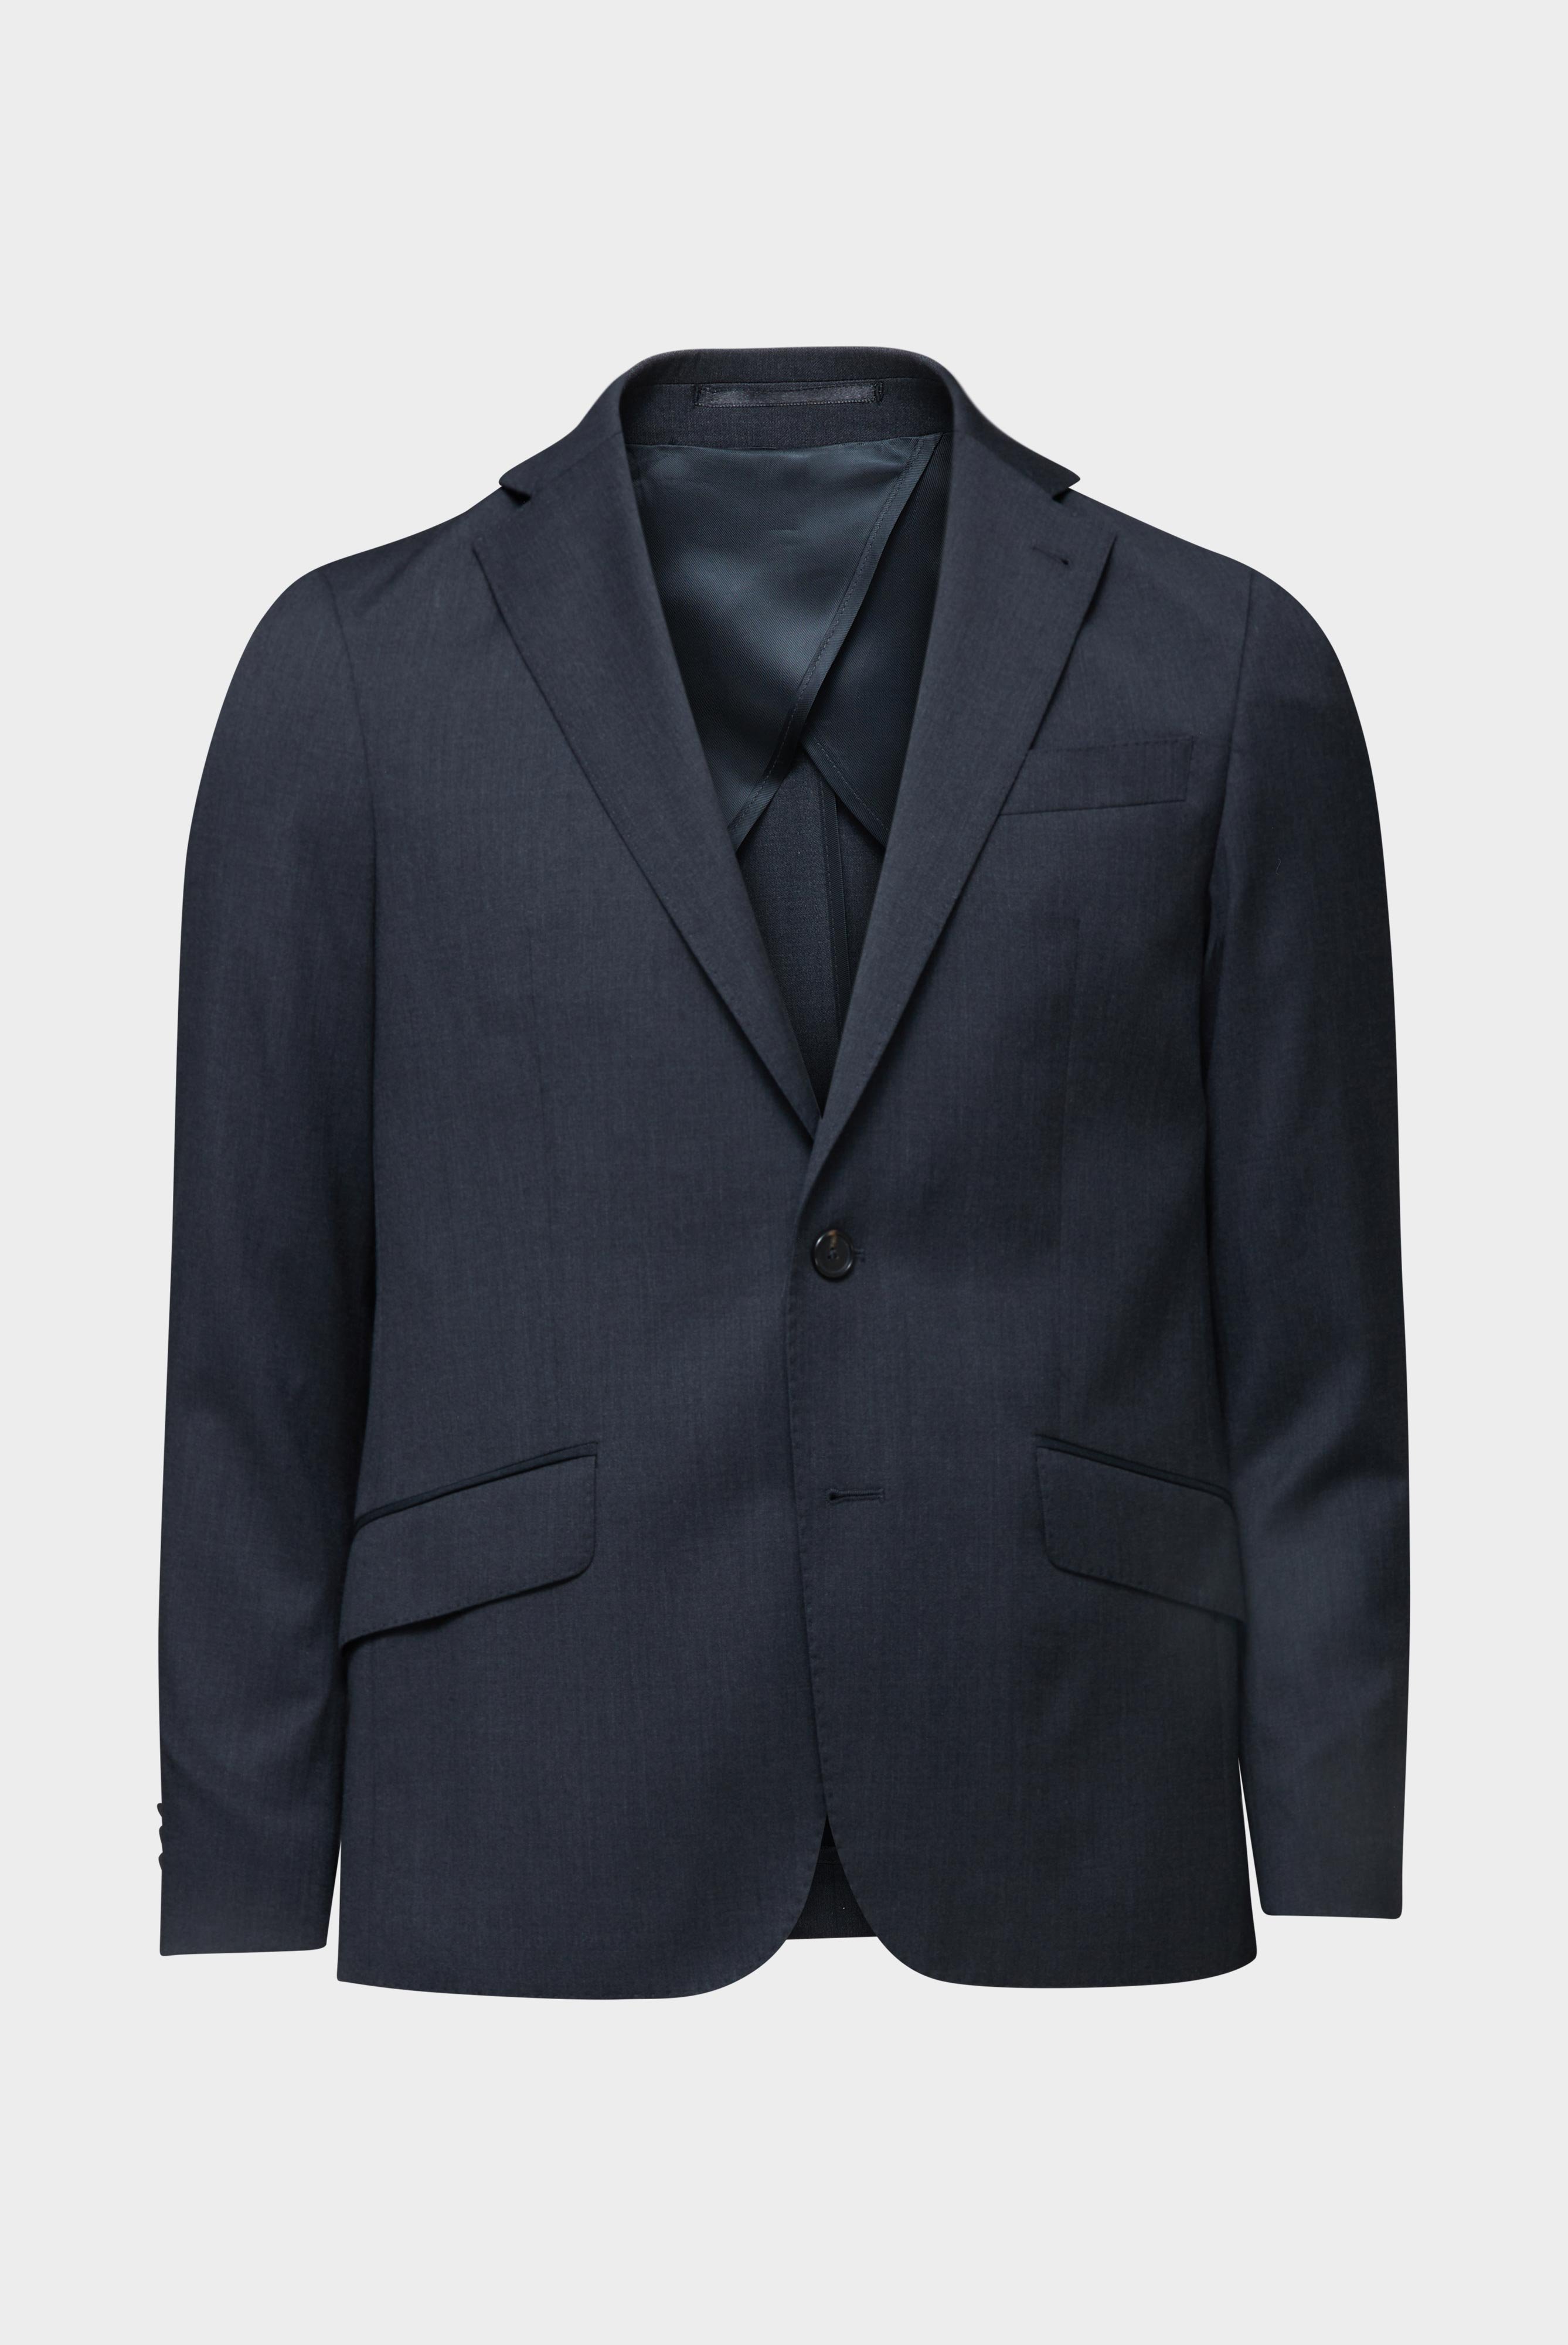 Blazers+Wool Jacket Slim Fit+20.7759..H01010.090.26